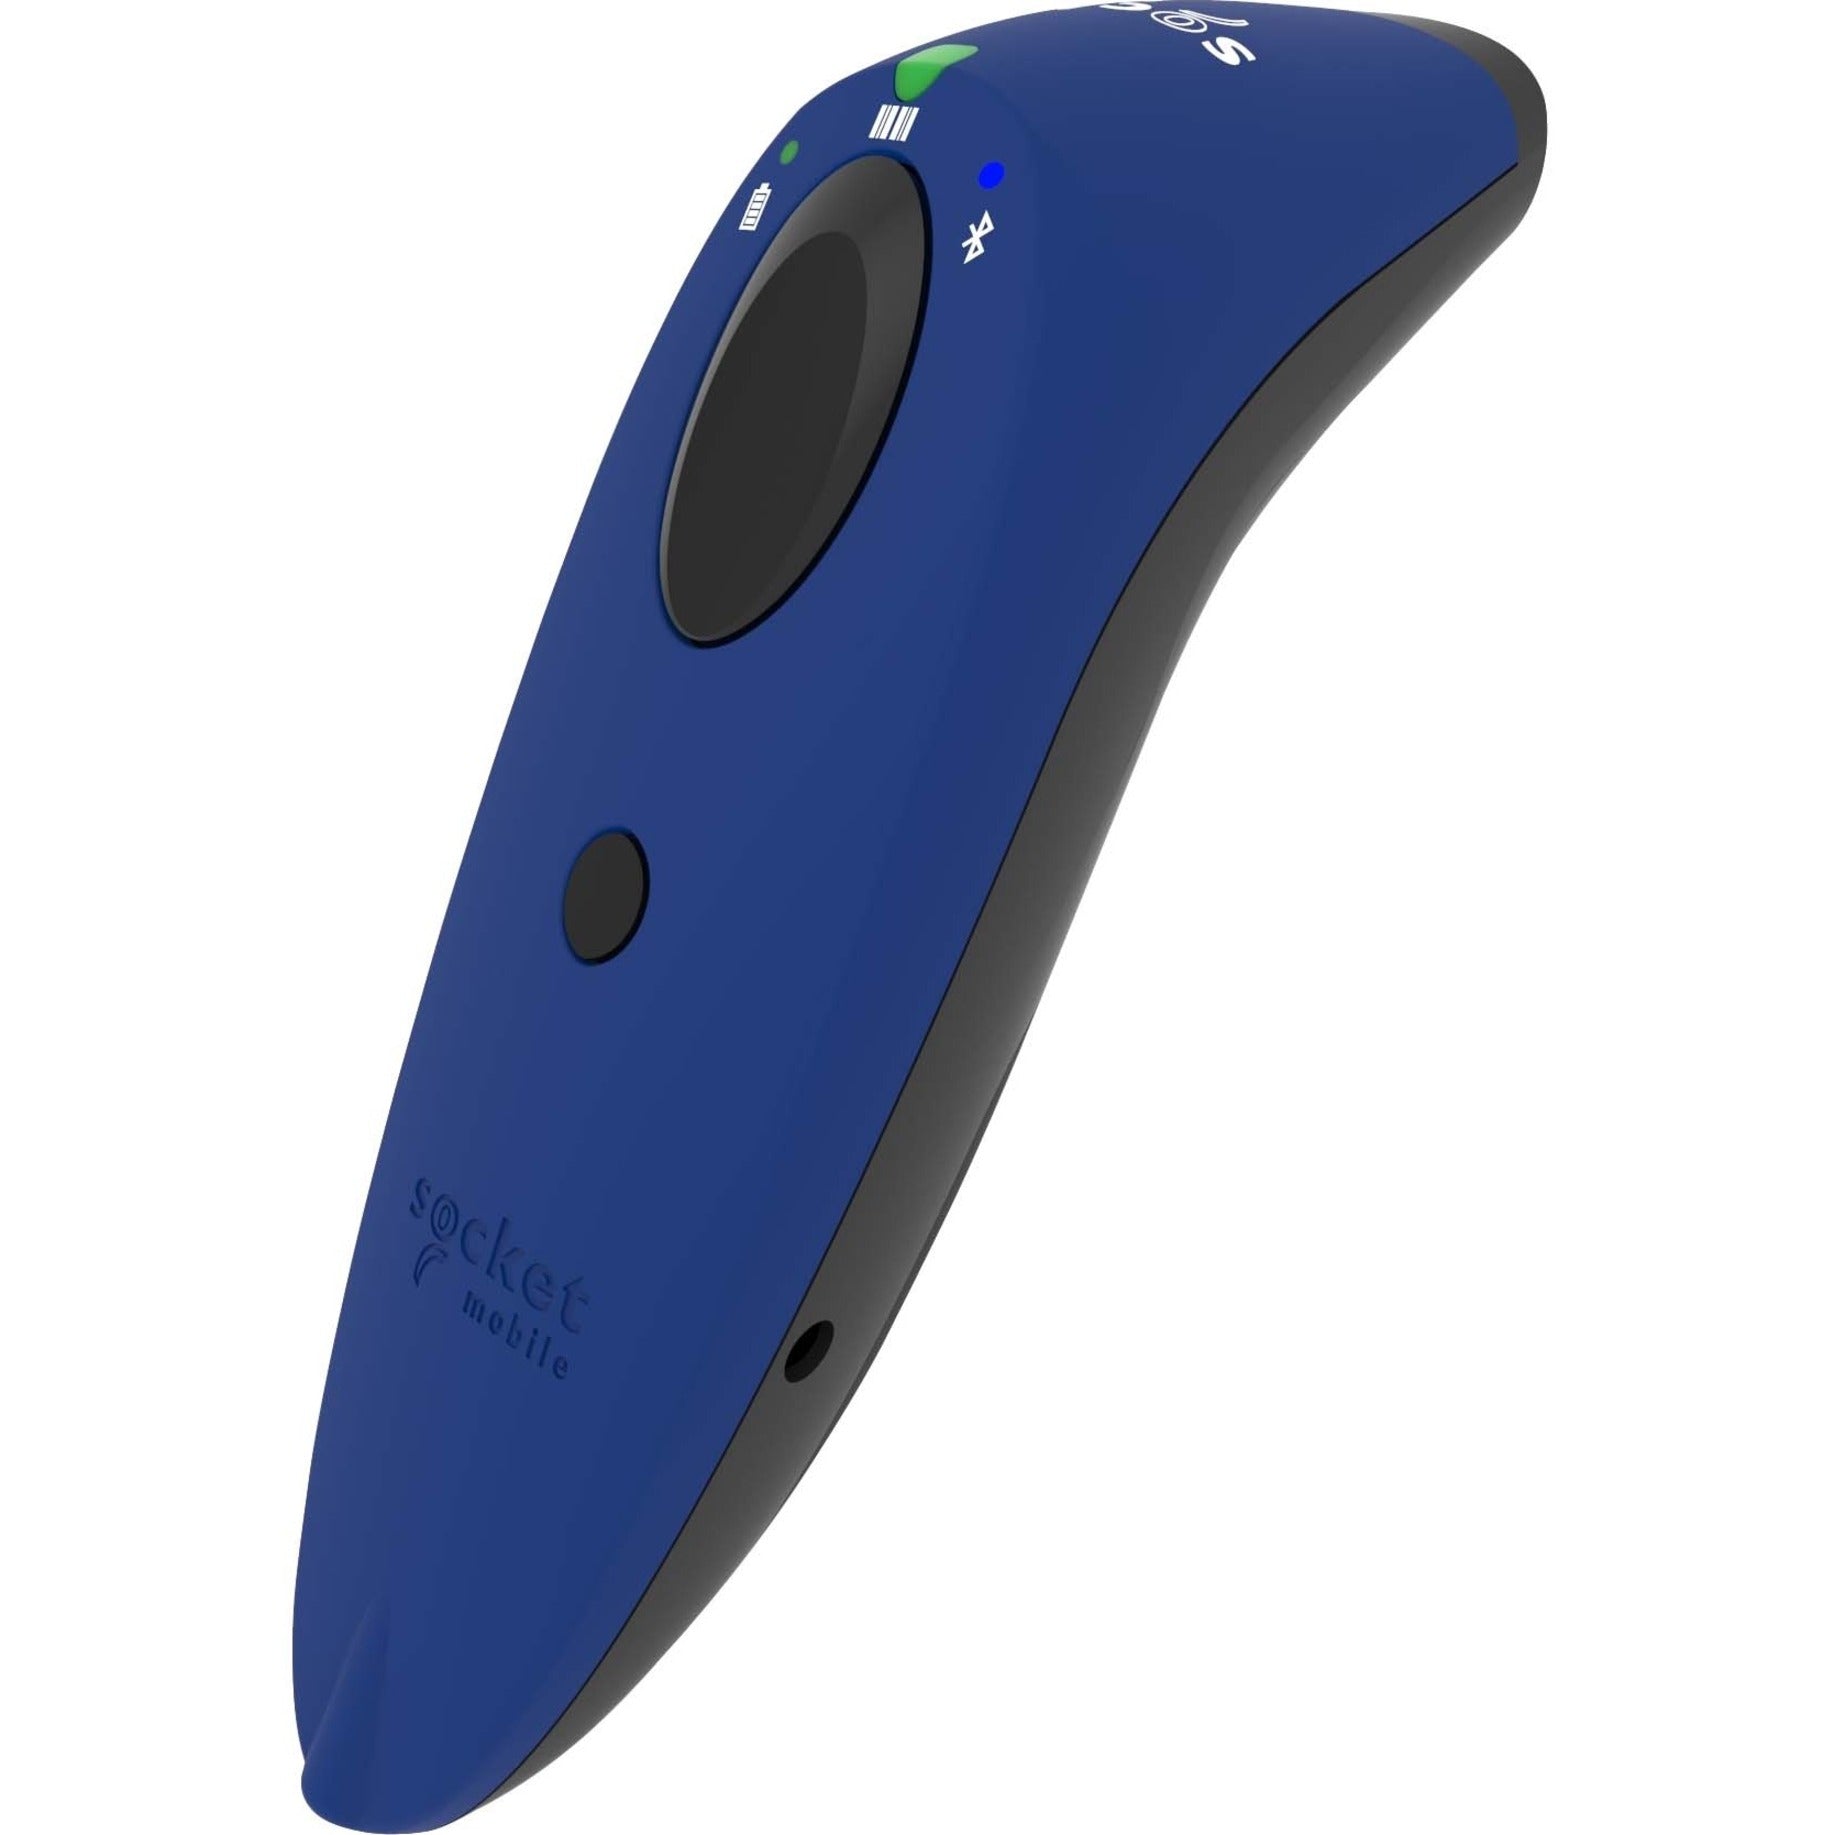 علامة تجارية: سوكيت موبايل المحمول CX3361-1683 SocketScan S730 ماسح ضوئي بالليزر للباركود ، أزرق - ماسح ضوئي لاسلكي 1D